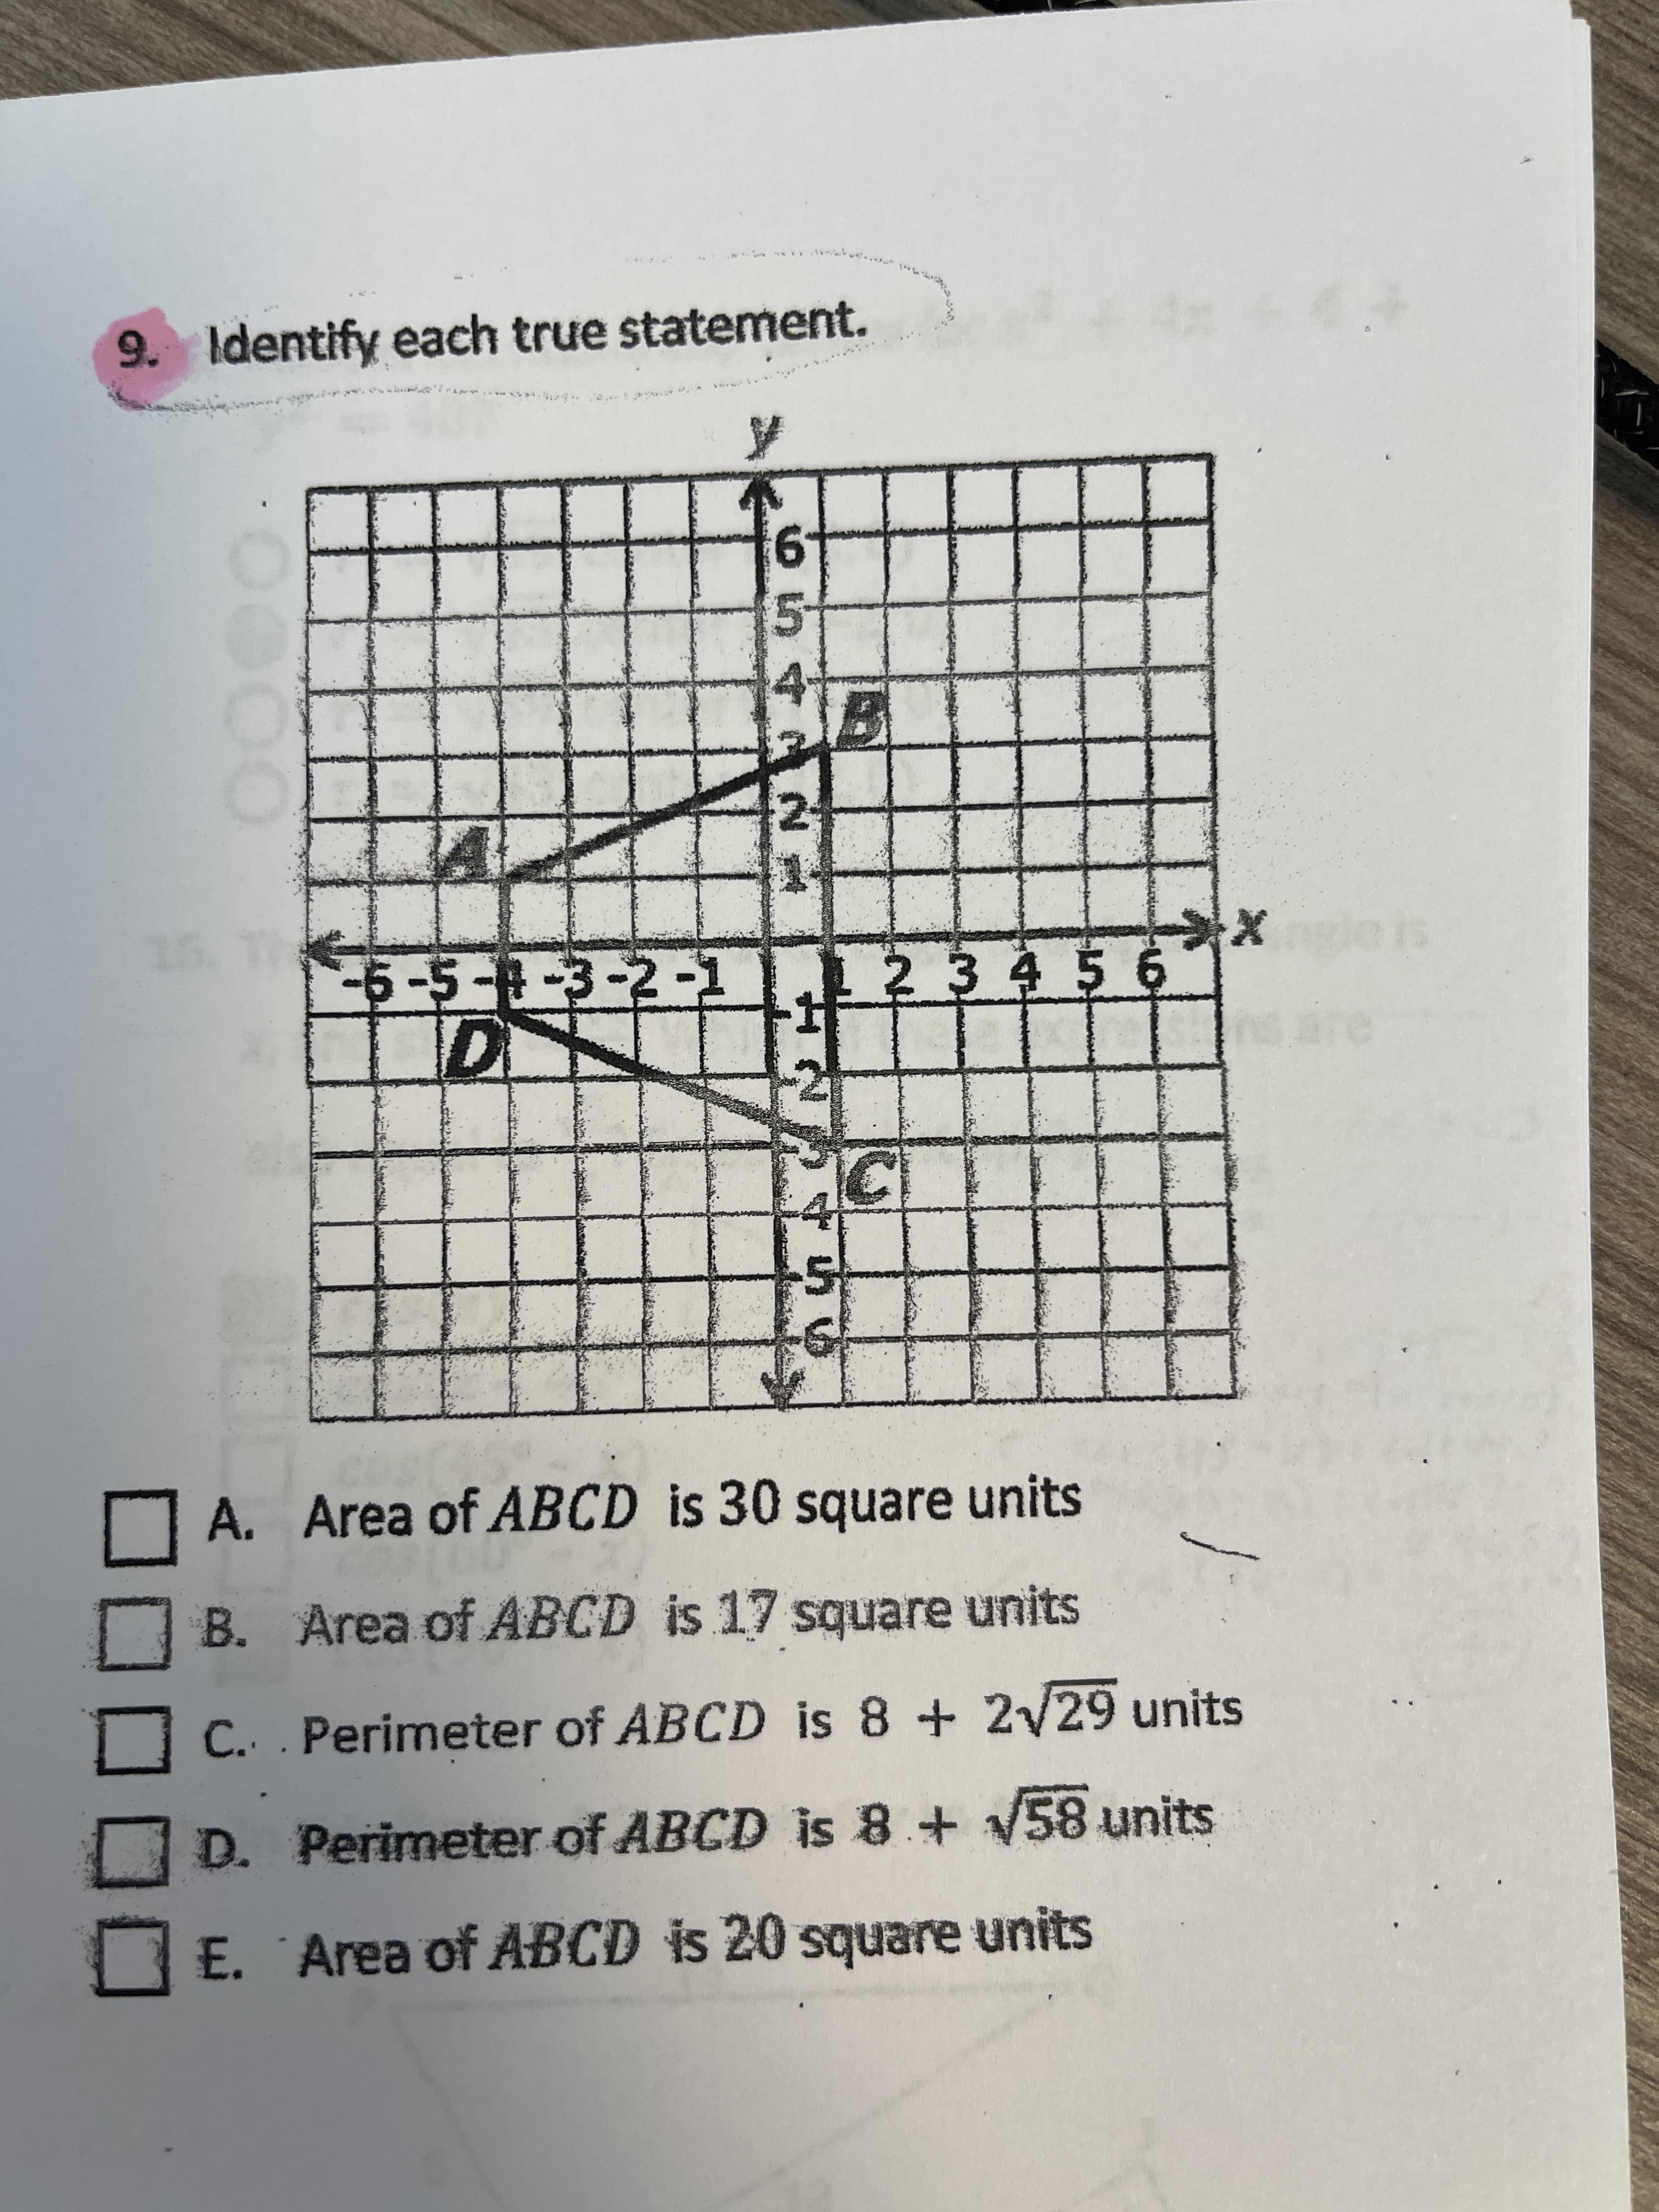 コロ
9. Identify each true statement.
2.
車23456
A. Area of ABCD is 30 square units
B. Area of ABCD is 17 square units
C. Perimeter of ABCD is 8 + 2/29 units
D. Perimeter of ABCD is 8 + V58 units
E. Area of ABCD is 20 square units
